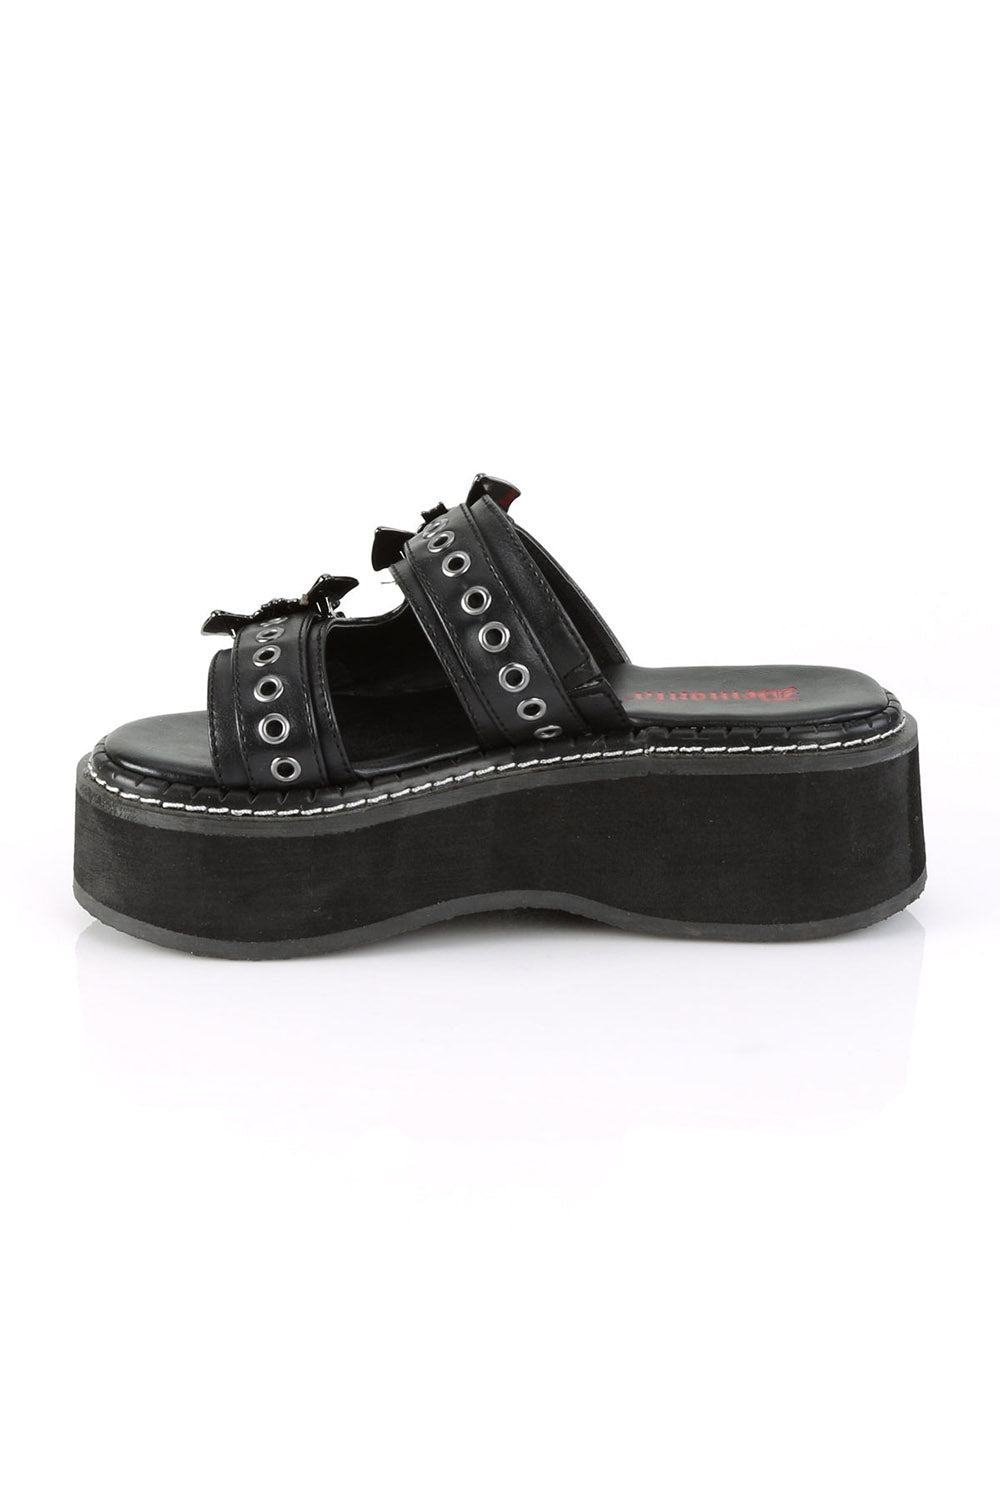 goth platform sandals for women by demonia